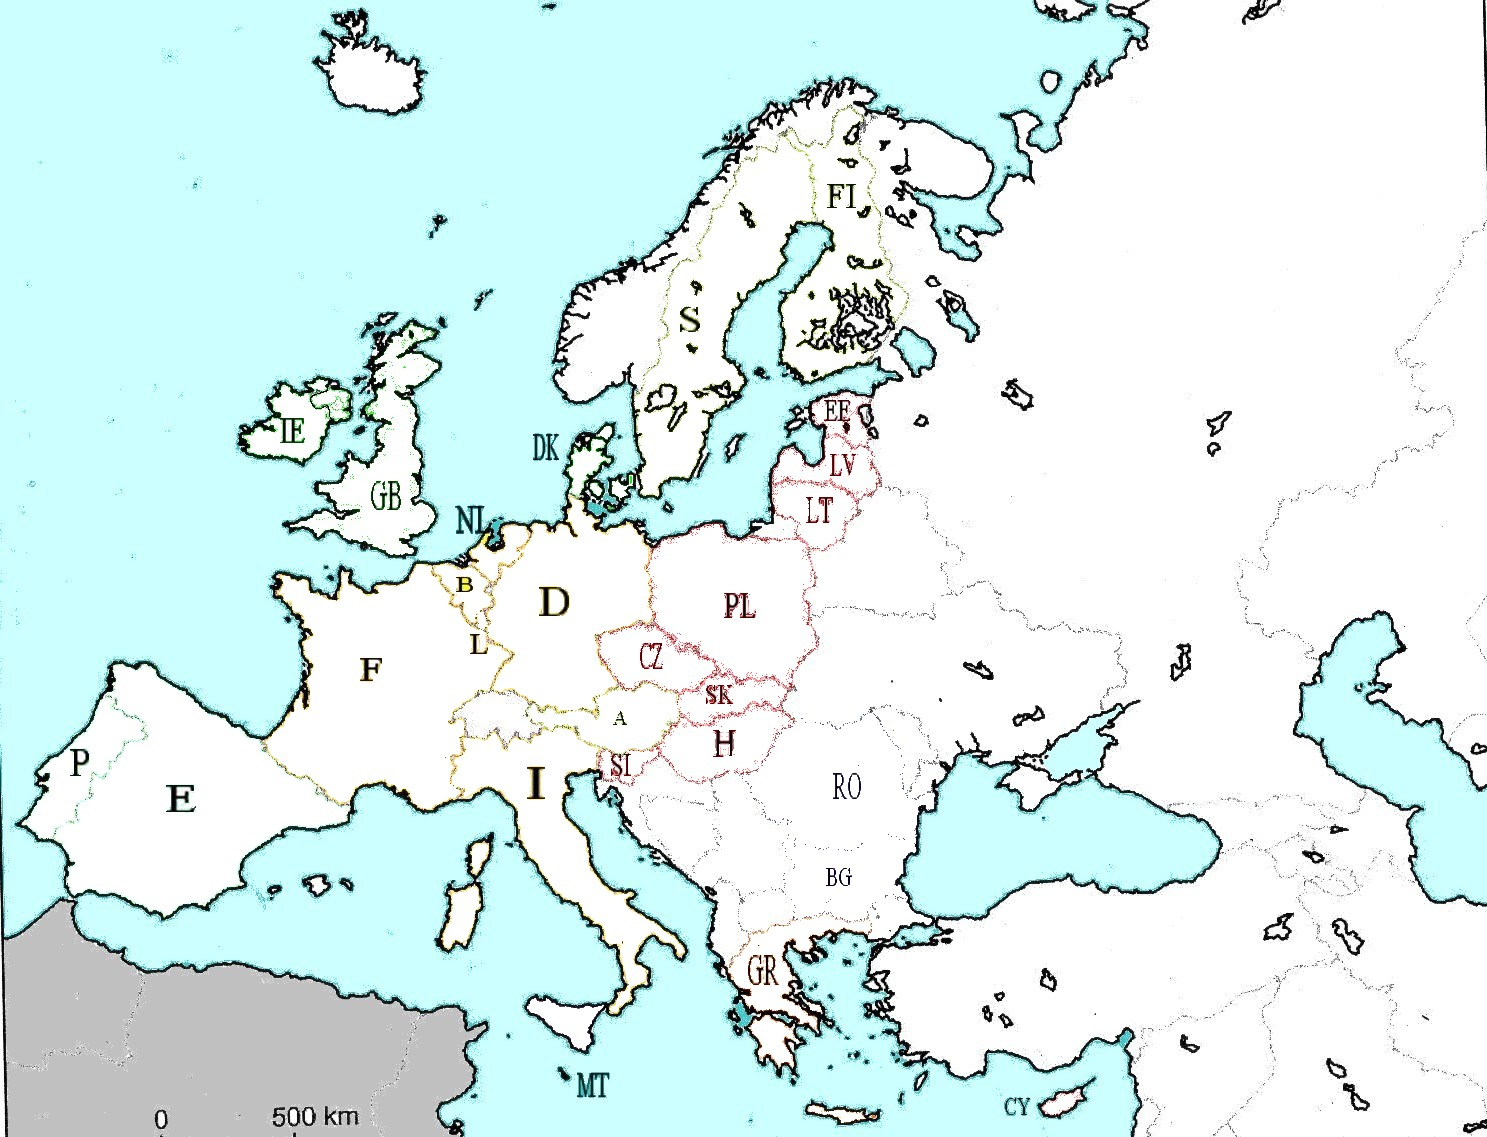 Les Pays De L'union Européenne - Ecole Jules Michelet - Niort concernant Union Européenne Carte Vierge